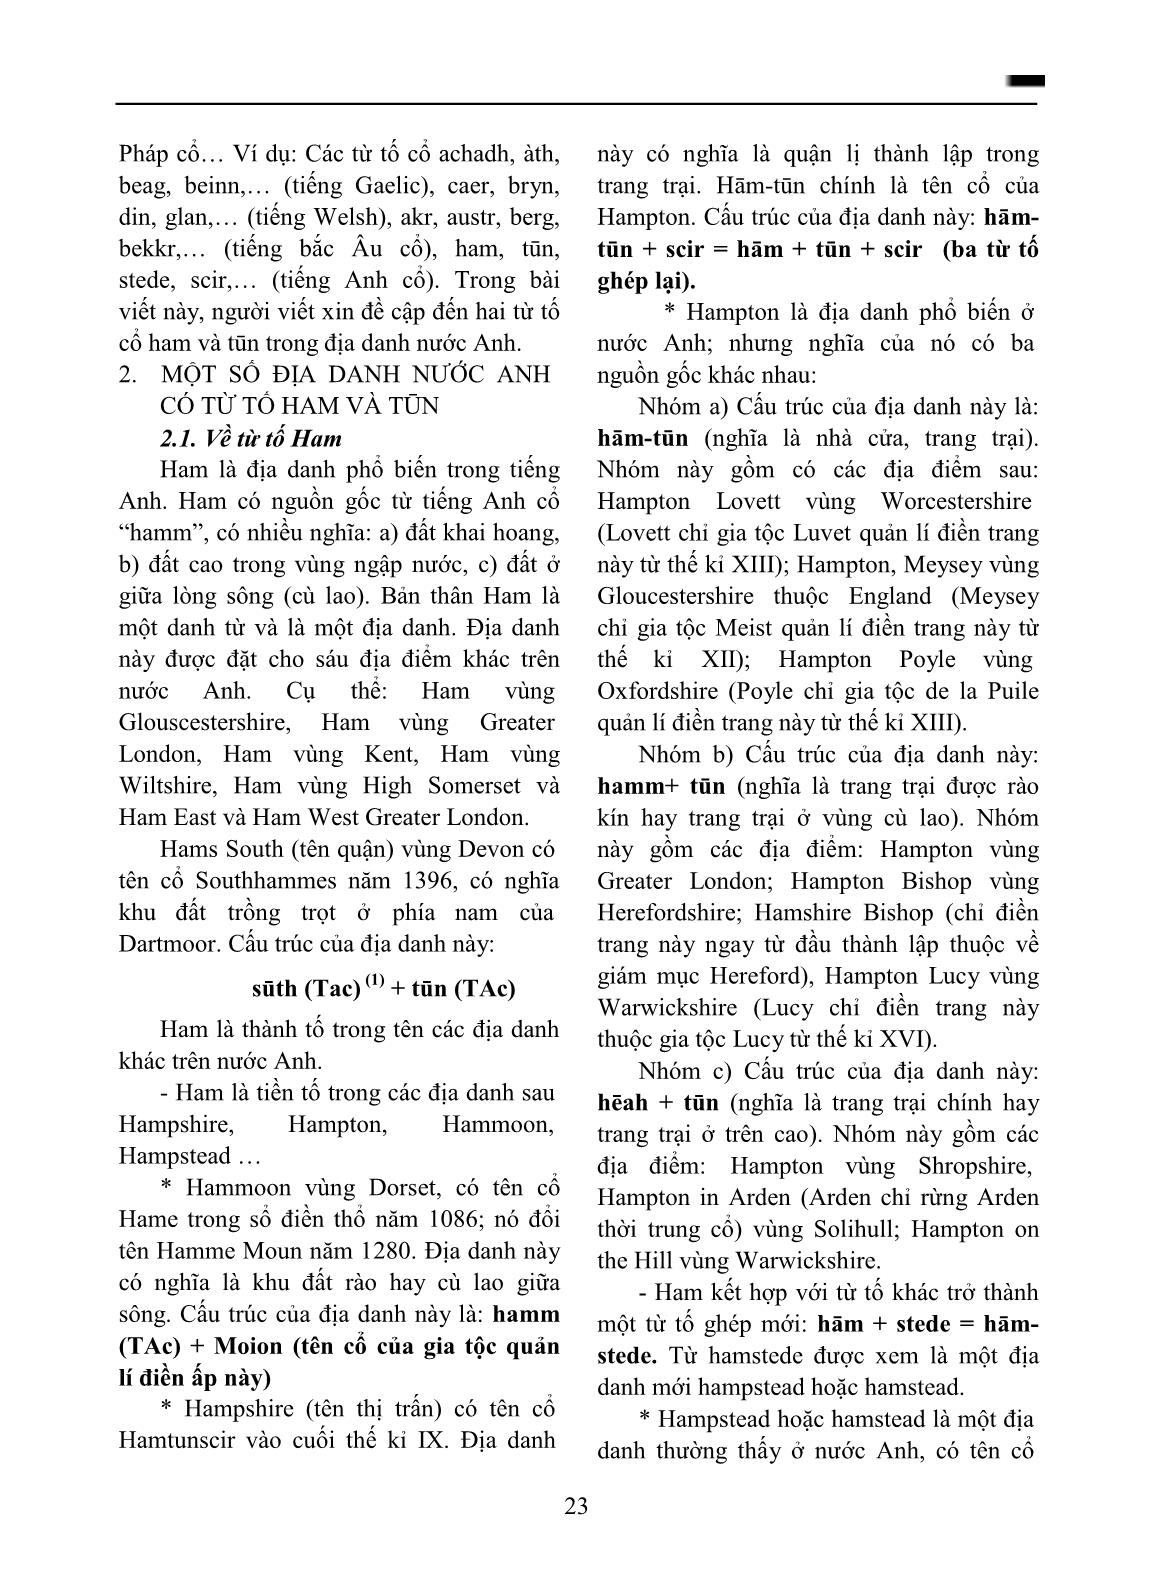 Từ tố cổ hām và tūn trong địa danh tiếng Anh trang 2